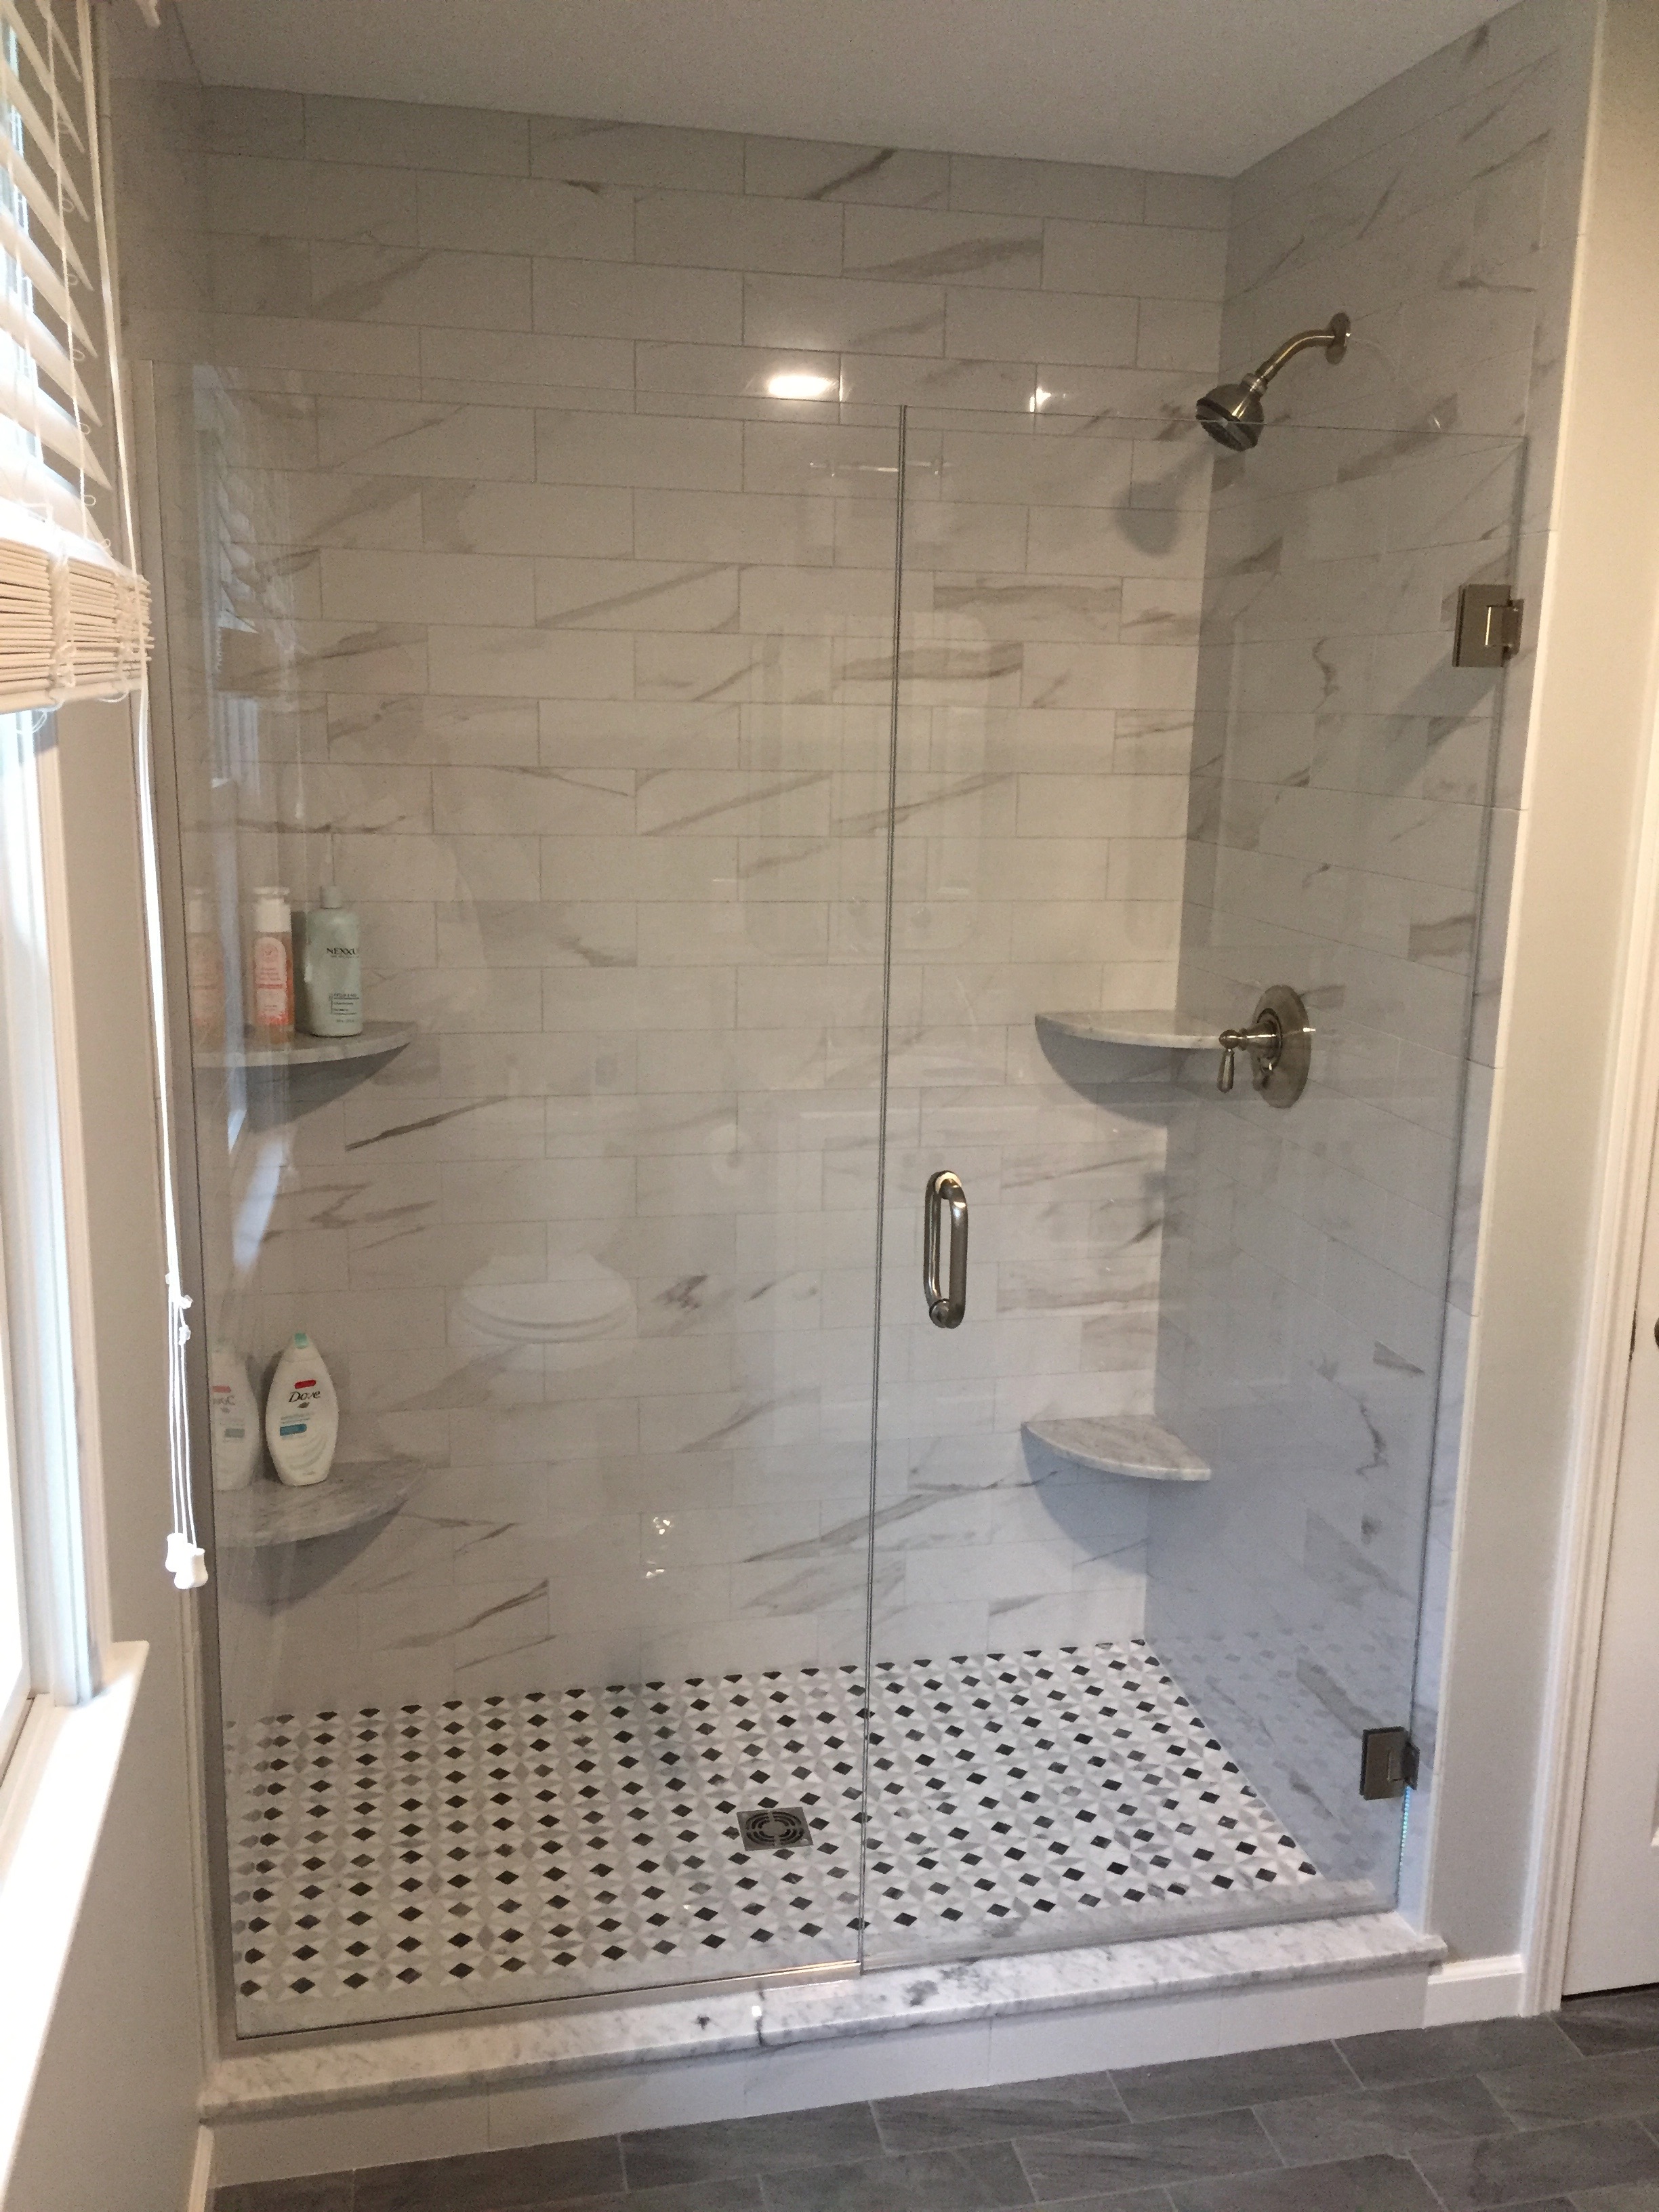 New Bath Remodel - Tile Shower